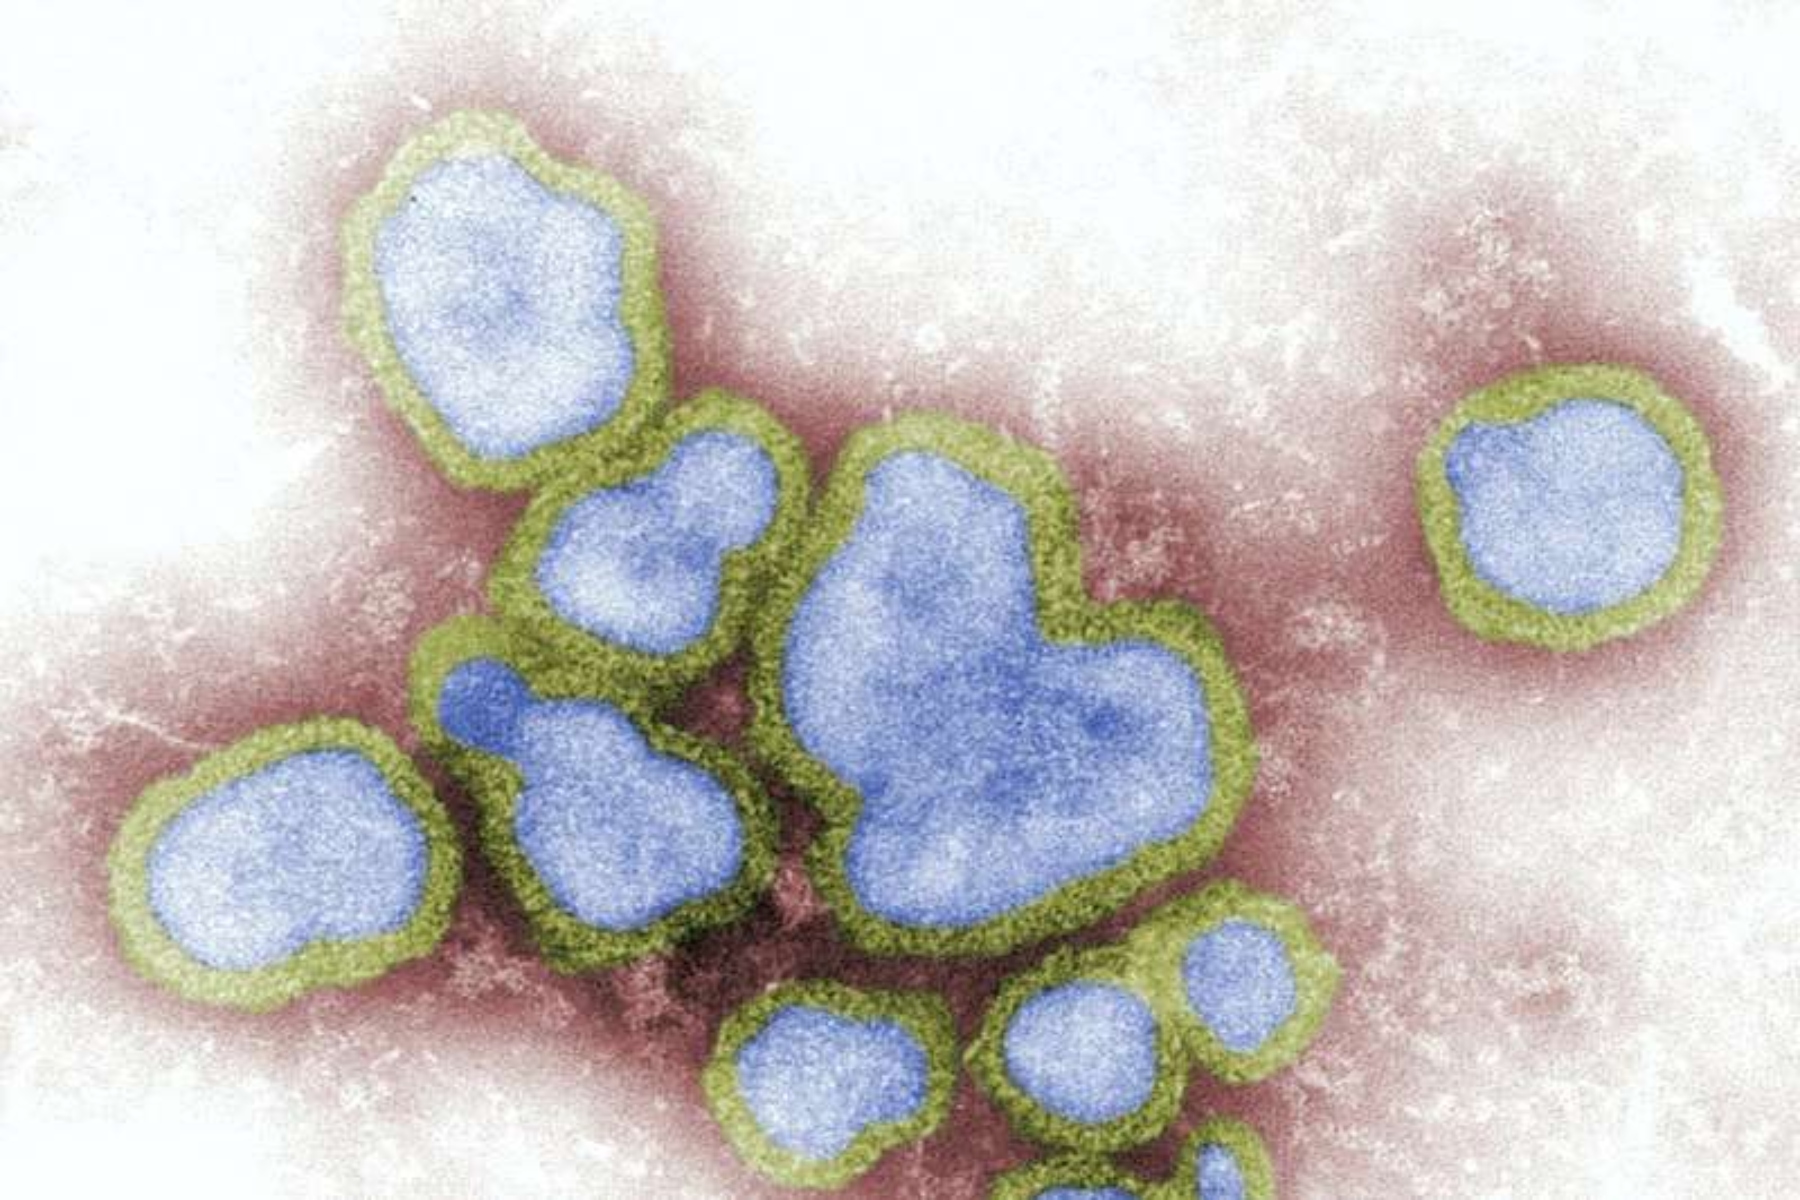 Γρίπη: Το Νο 1 παθογόνο που προκαλεί ανησυχία για το ενδεχόμενο πανδημίας